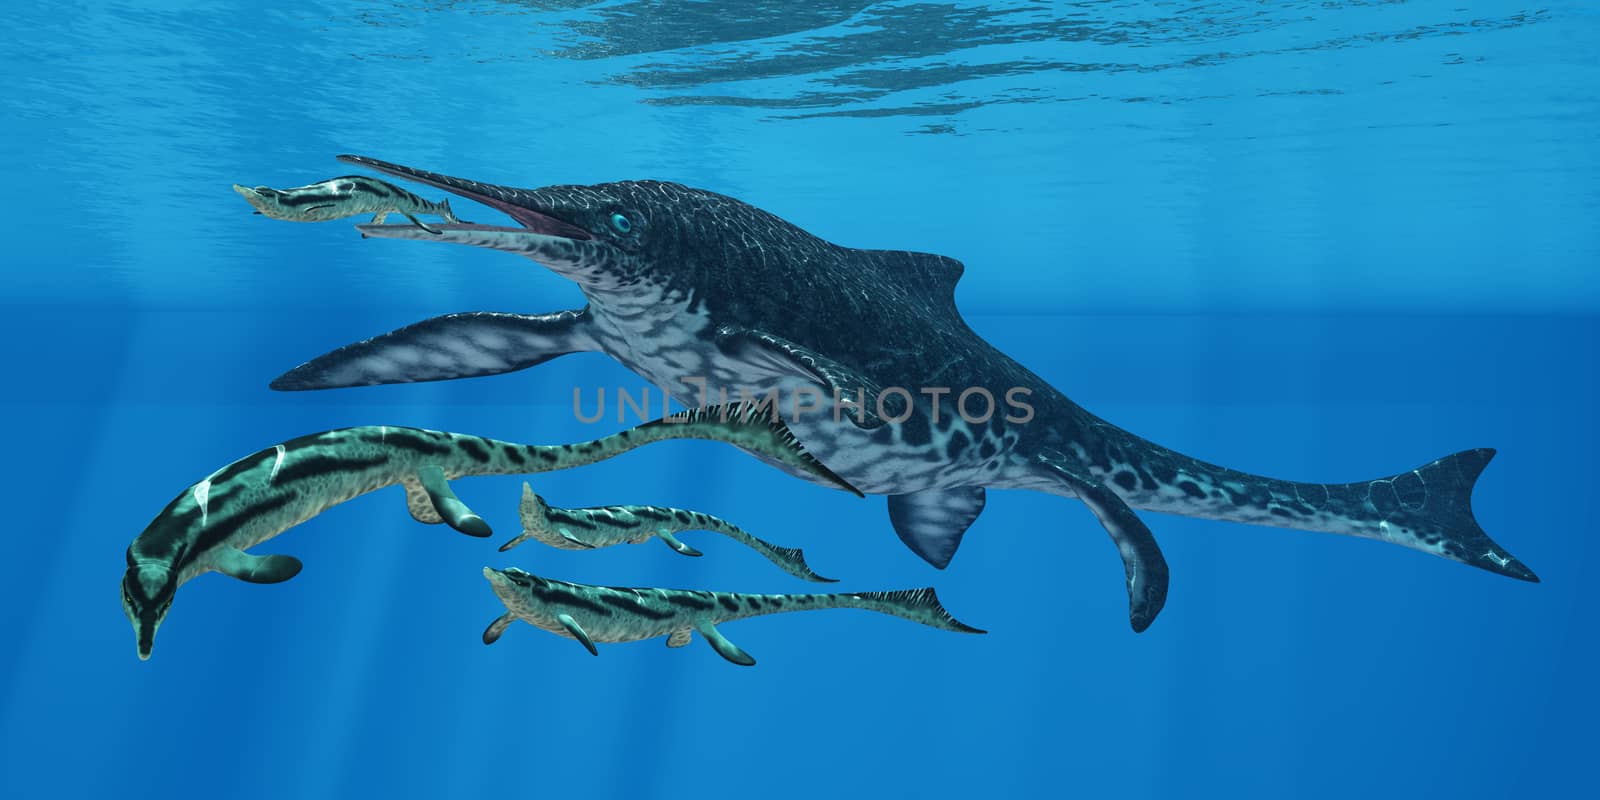 Shonisaurus Marine Reptile by Catmando